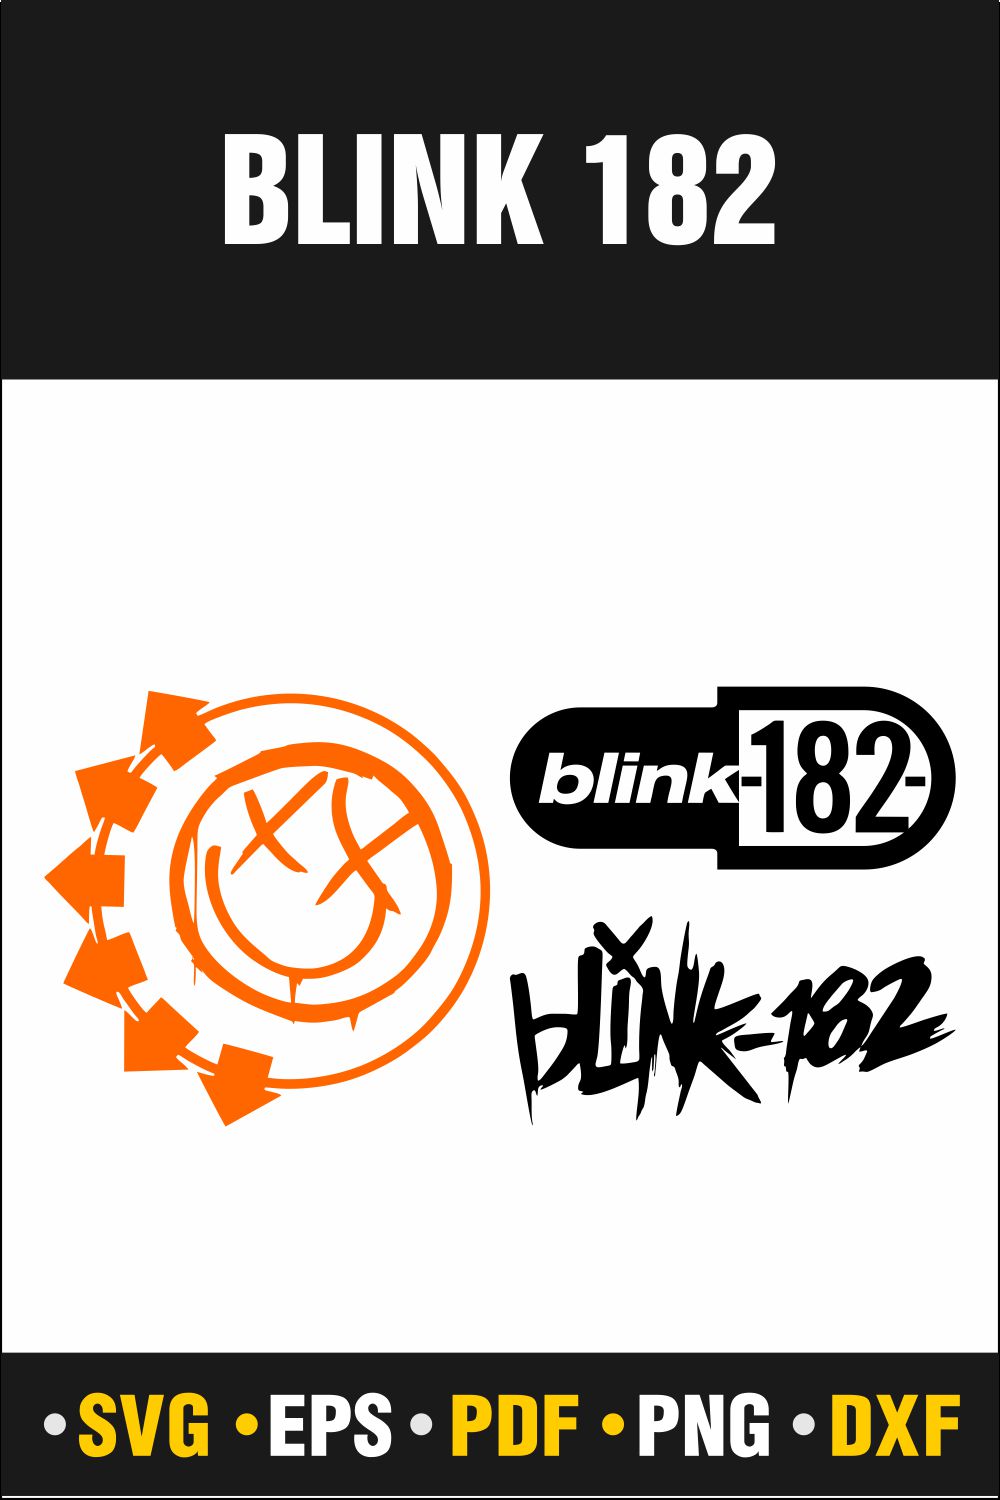 Blink 182 Svg, Blink 182, Blink 182 Music Svg, Blink 182 Png, Rap Svg, Music Blink 182 Svg, Instant Download Vector Cut file Cricut, Silhouette, Pdf Png, Dxf, Decal pinterest preview image.